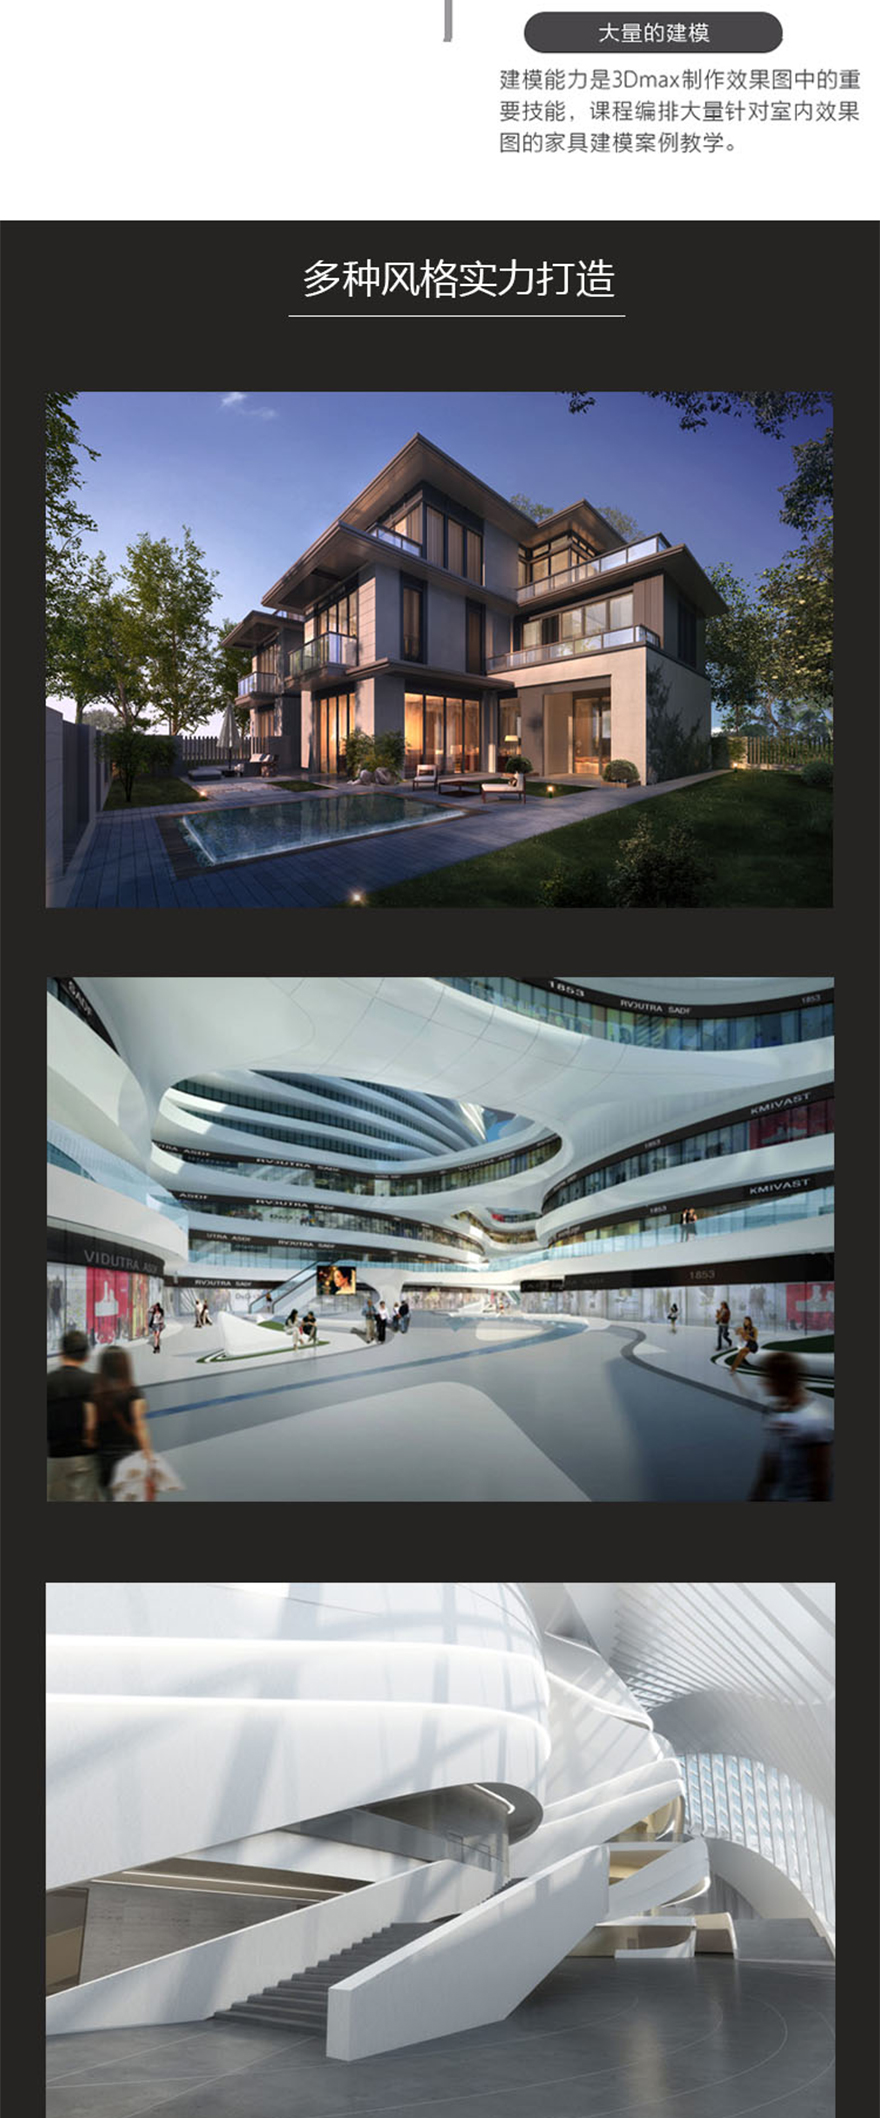 3Dmax+VRay-轻奢复式公寓设计全景制作